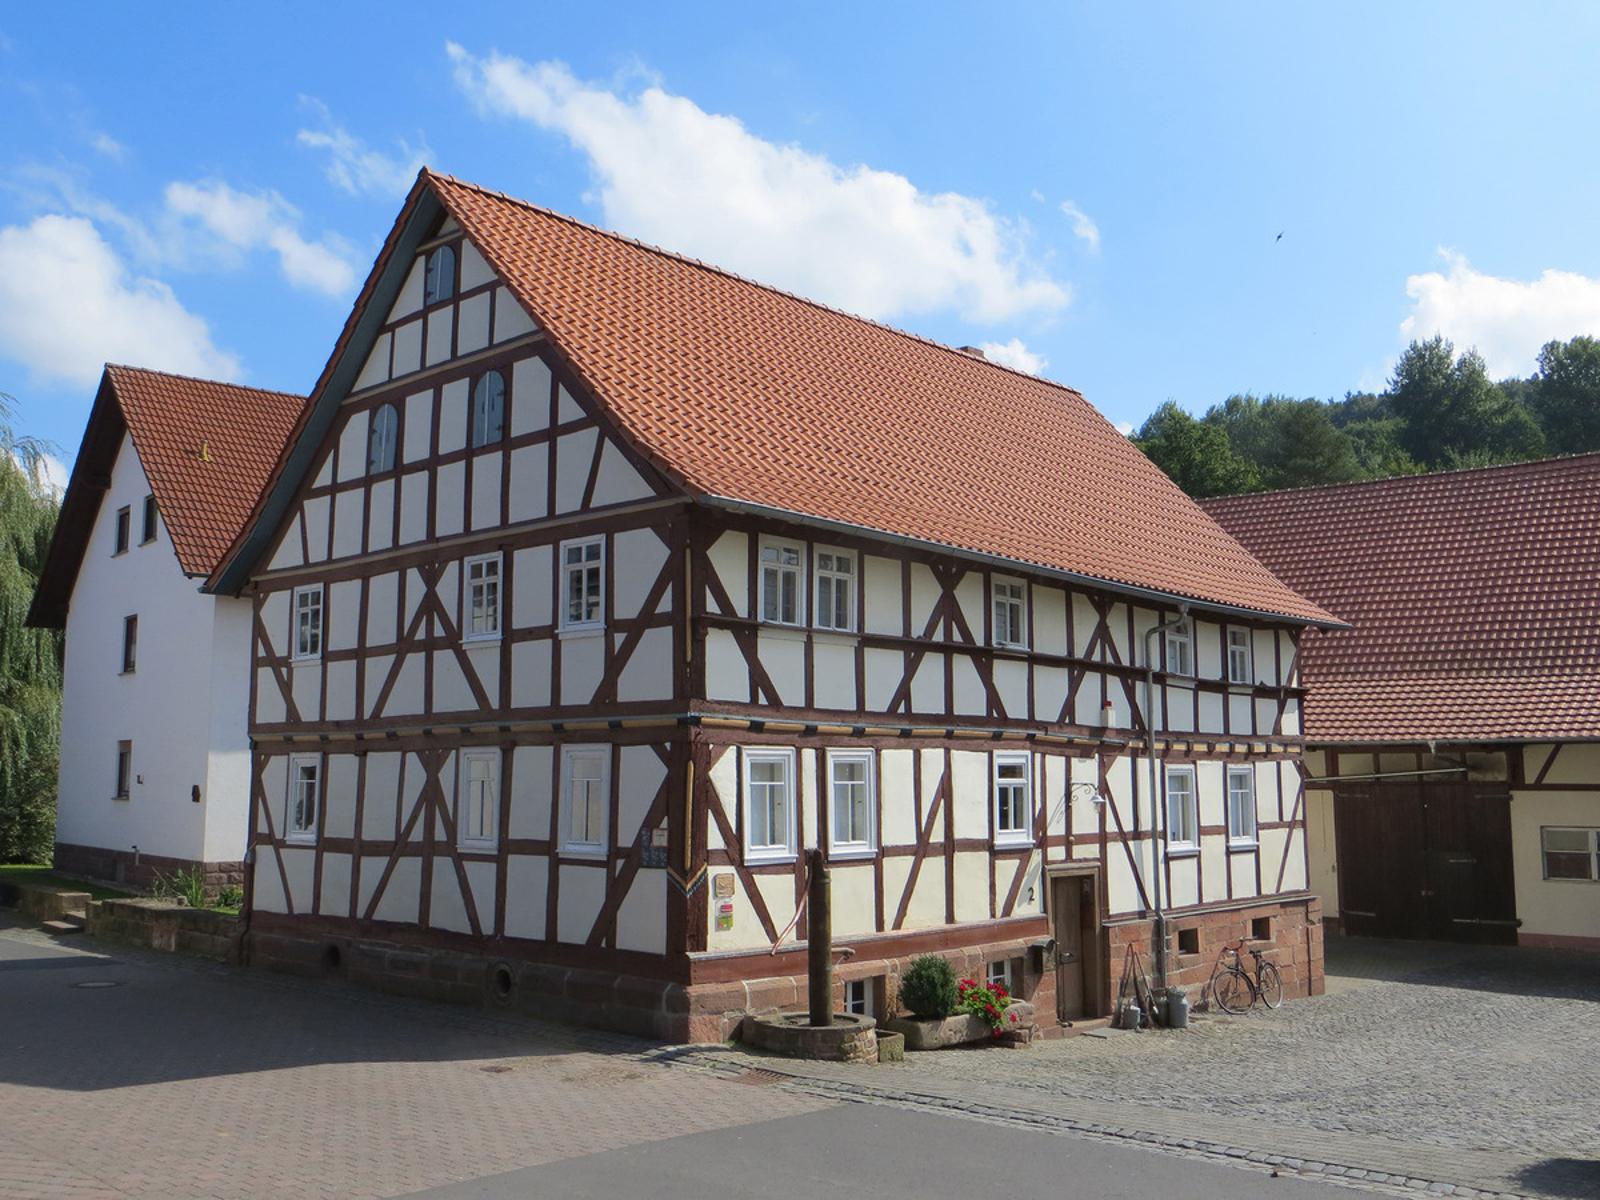 Das Dorfmuseum Buisch ahl Huss in Schlitz lernt man die Geschichte und Kultur des Dorfes kennen. Es ist ein kleines, charmantes Museum und befindet sich in einem historischen Fachwerkhaus. Das Museum bietet eine Vielzahl von alten Ausstellungss...